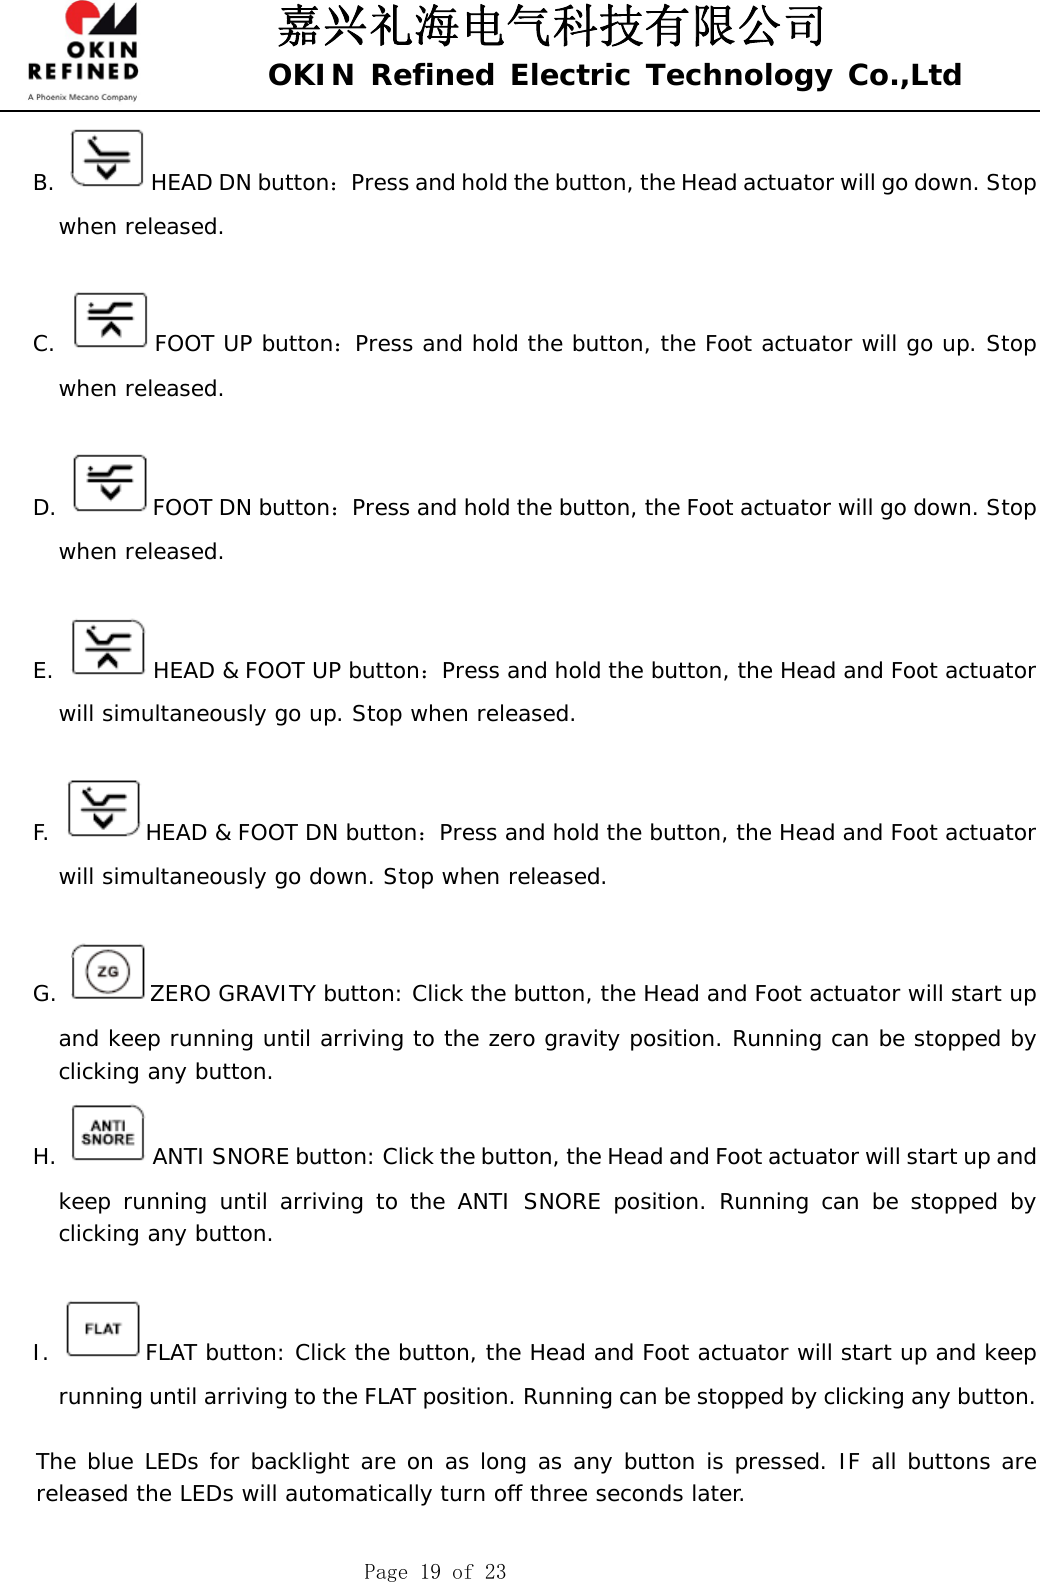 嘉兴礼海电气科技有限公司 OKIN Refined Electric Technology Co.,Ltd    Page 19 of 23 B.  HEAD DN button：Press and hold the button, the Head actuator will go down. Stop when released.  C.  FOOT UP button：Press and hold the button, the Foot actuator will go up. Stop when released.  D.  FOOT DN button：Press and hold the button, the Foot actuator will go down. Stop when released.  E.  HEAD &amp; FOOT UP button：Press and hold the button, the Head and Foot actuator will simultaneously go up. Stop when released.  F.  HEAD &amp; FOOT DN button：Press and hold the button, the Head and Foot actuator will simultaneously go down. Stop when released.  G.  ZERO GRAVITY button: Click the button, the Head and Foot actuator will start up and keep running until arriving to the zero gravity position. Running can be stopped by clicking any button.  H.  ANTI SNORE button: Click the button, the Head and Foot actuator will start up and keep running until arriving to the ANTI SNORE position. Running can be stopped by clicking any button.   I.  FLAT button: Click the button, the Head and Foot actuator will start up and keep running until arriving to the FLAT position. Running can be stopped by clicking any button.     The blue LEDs for backlight are on as long as any button is pressed. IF all buttons are released the LEDs will automatically turn off three seconds later.  